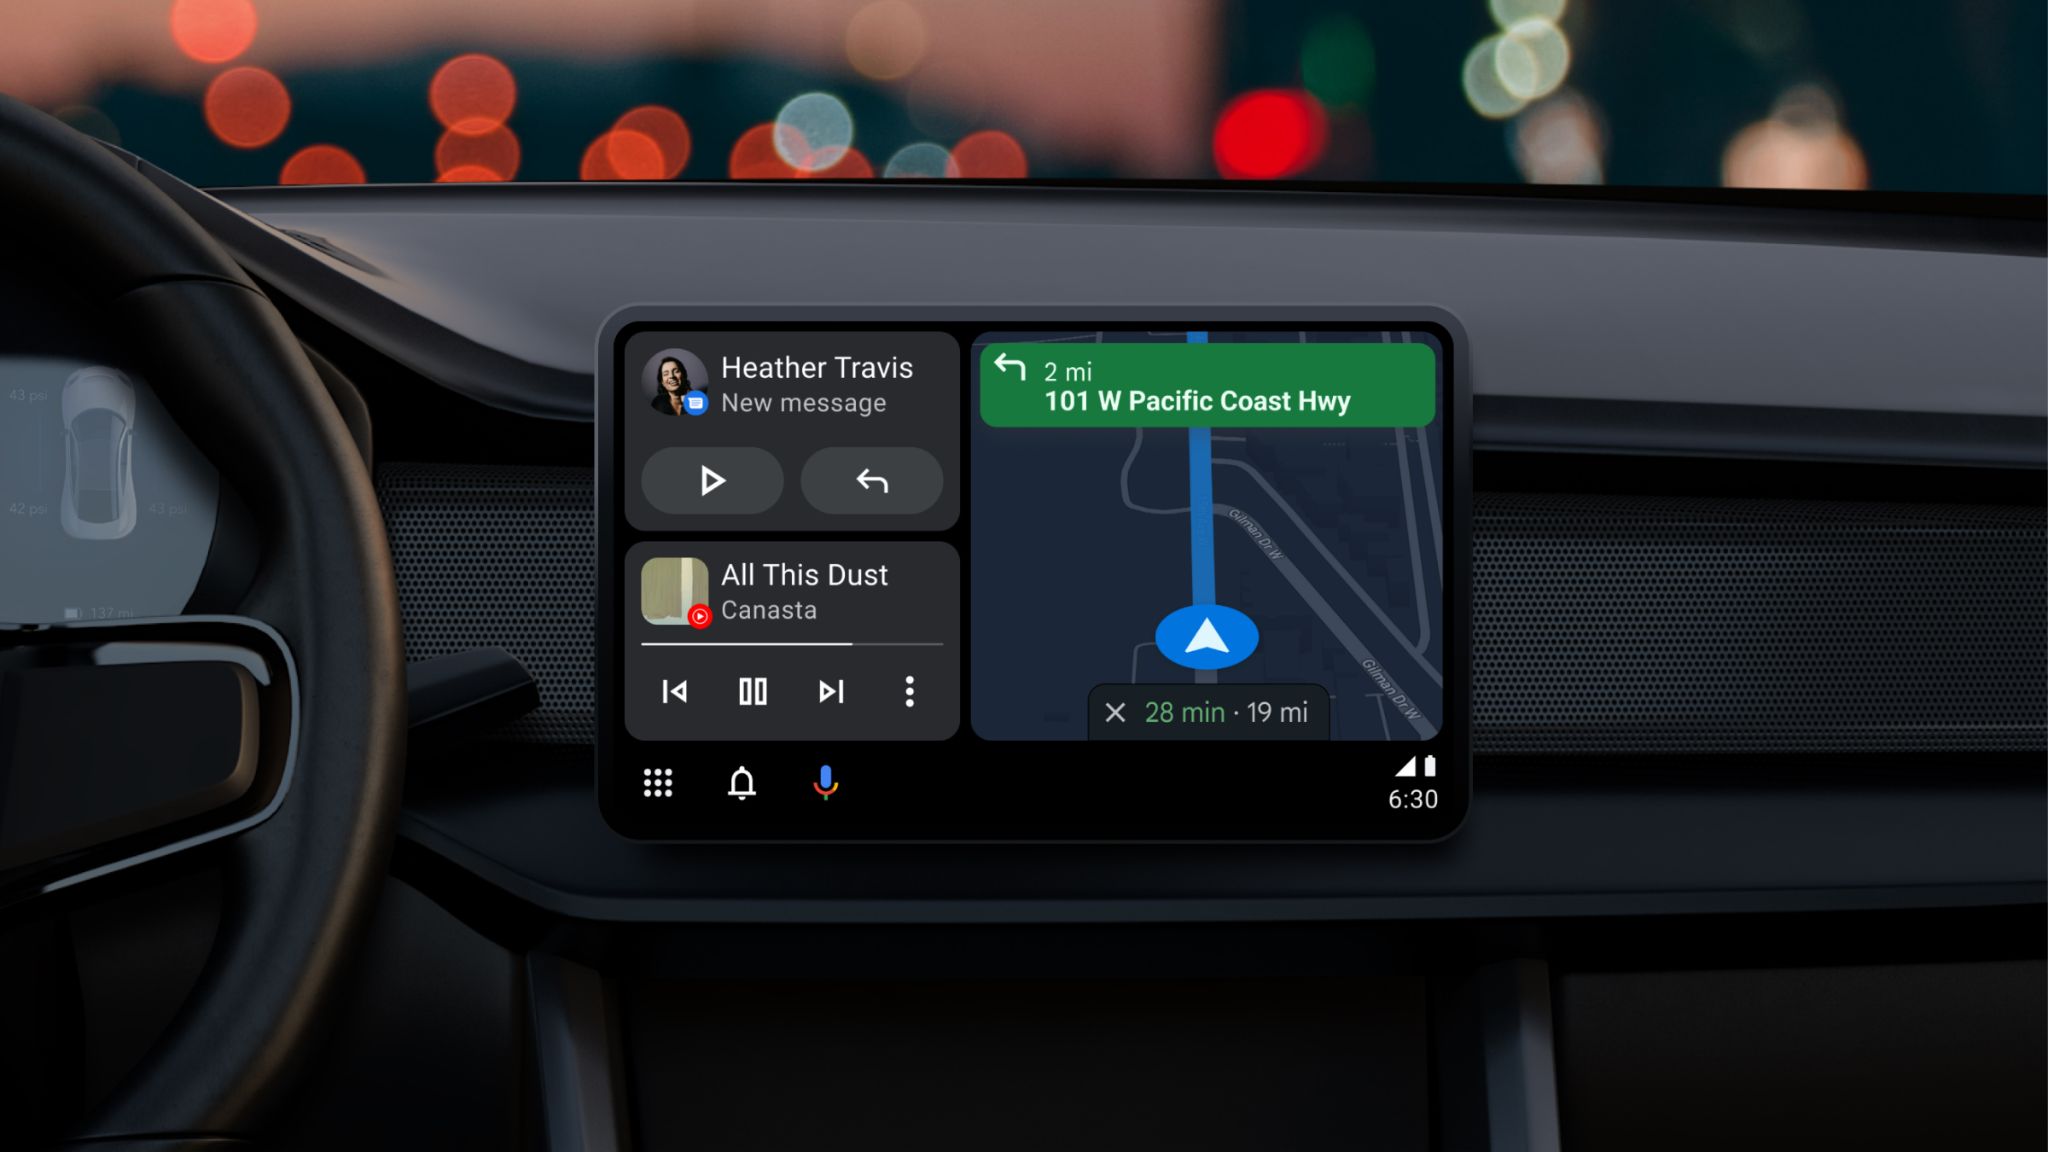 Android Auto UI baru ditampilkan pada tampilan lanskap di dasbor mobil